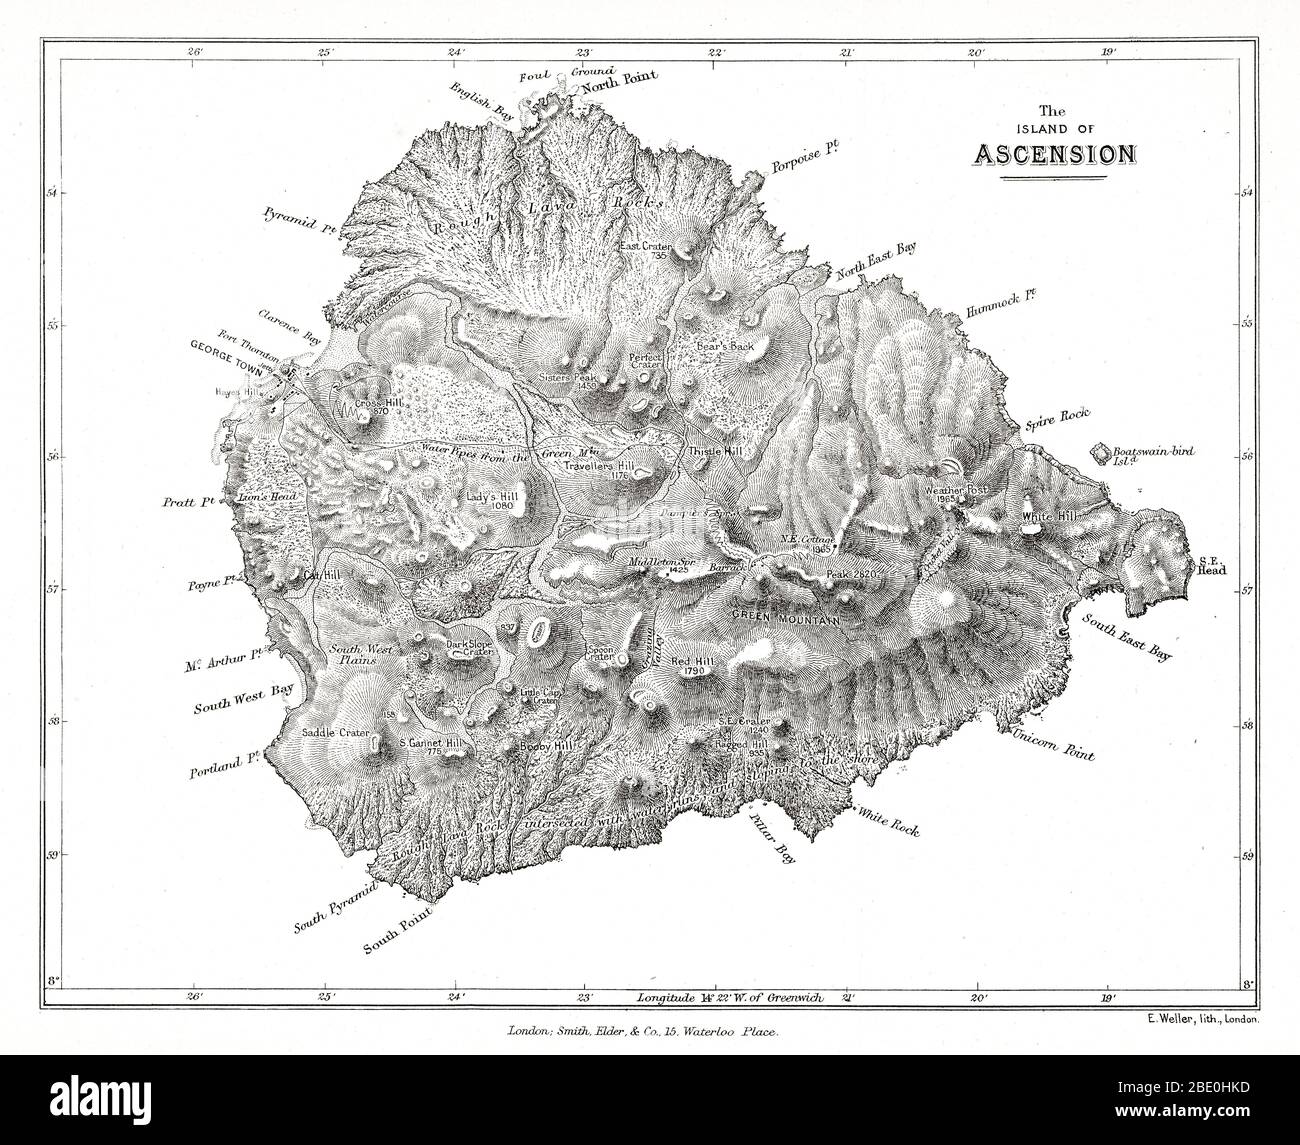 Mapa de la isla de Ascensión de las observaciones geológicas de Charles Darwin sobre las islas volcánicas y partes de Sudamérica visitadas durante el viaje de H.M.S. "Beagle". edición 2d. Londres: Smith Elder and Co., 1876. La Isla Ascensión es una isla volcánica aislada en las aguas ecuatoriales del Océano Atlántico Sur, a unos 1,600 kilómetros (1,000 mi) de la costa de África y a 2,250 kilómetros (1,400 mi) de la costa de Sudamérica, que está aproximadamente a medio camino entre el cuerno de América del Sur y África. Foto de stock